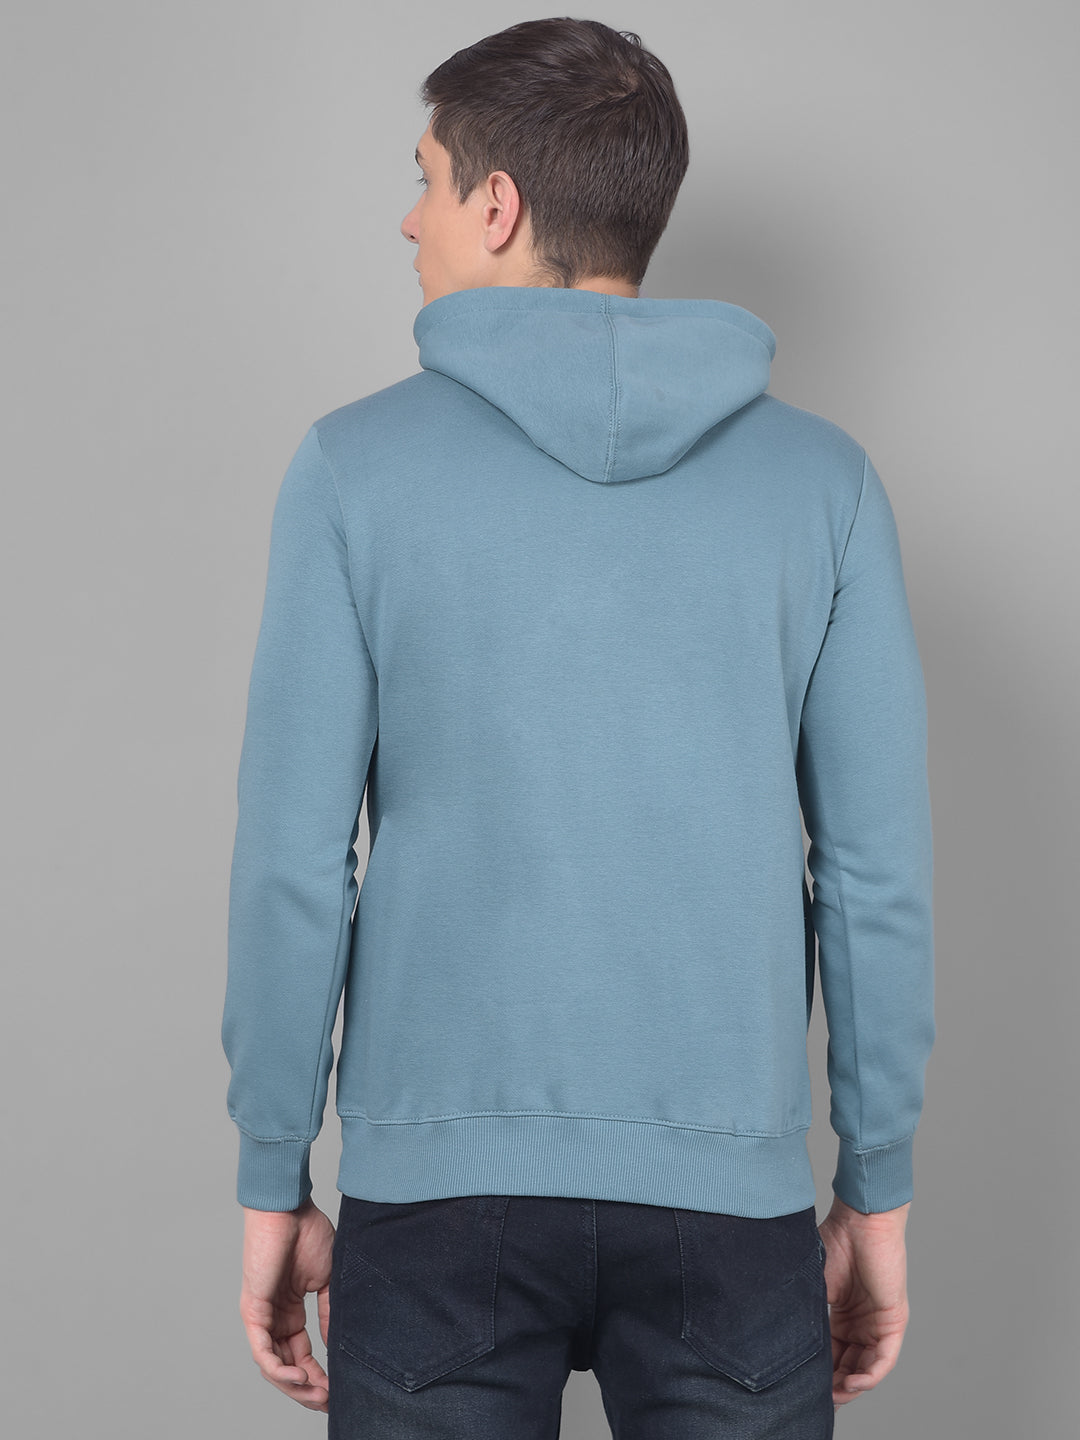 cobb teal blue printed classic hoodie